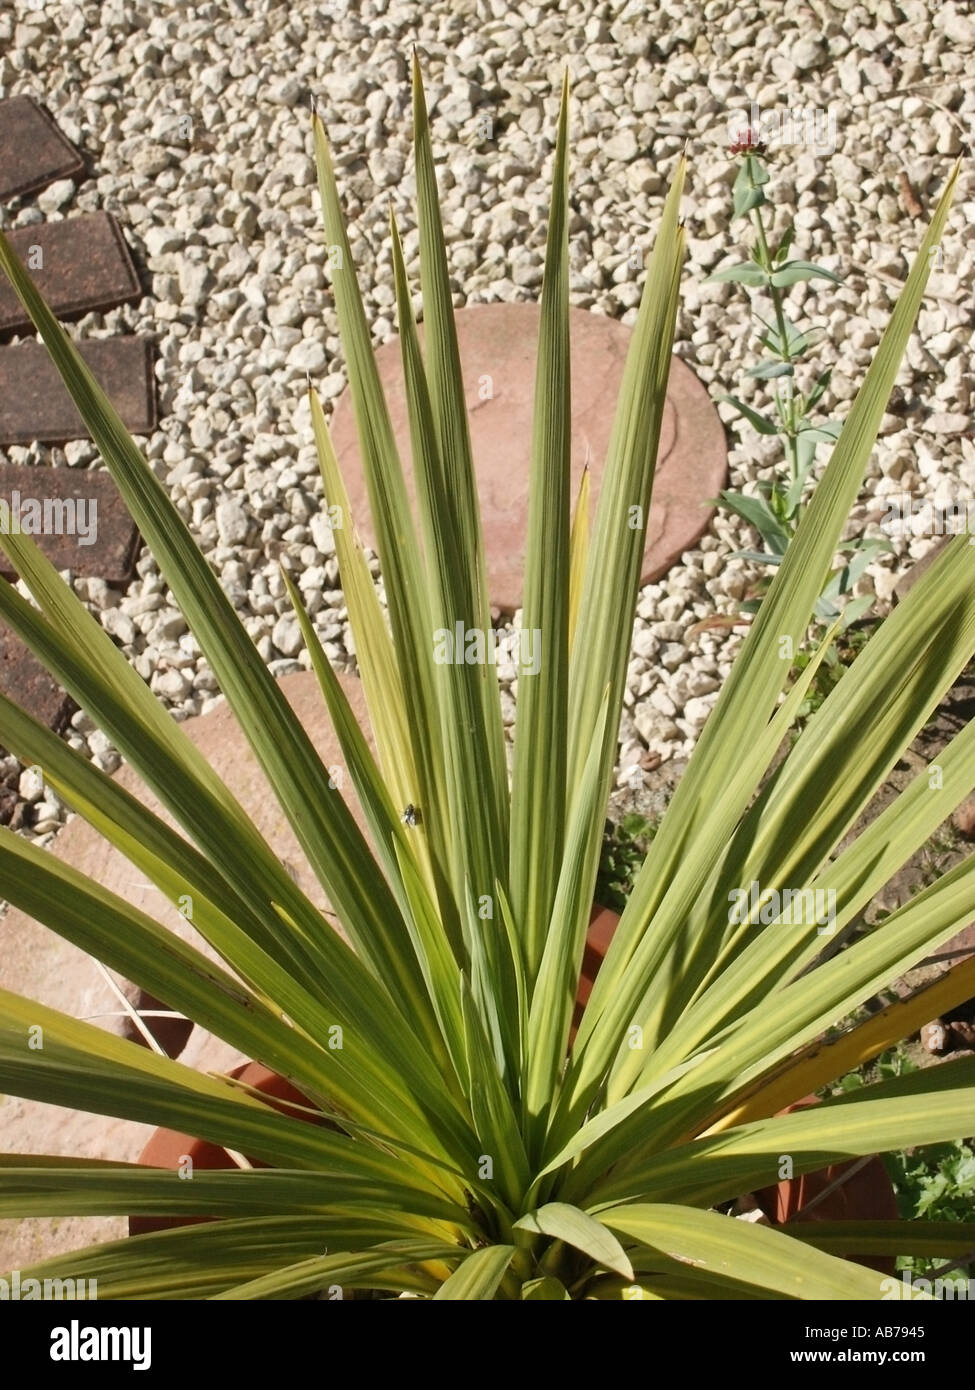 Essex stachelige grüne Blätter immergrünen Cordyline Pflanze im heimischen  Garten auch bekannt als eine Kohl-Palme Stockfotografie - Alamy